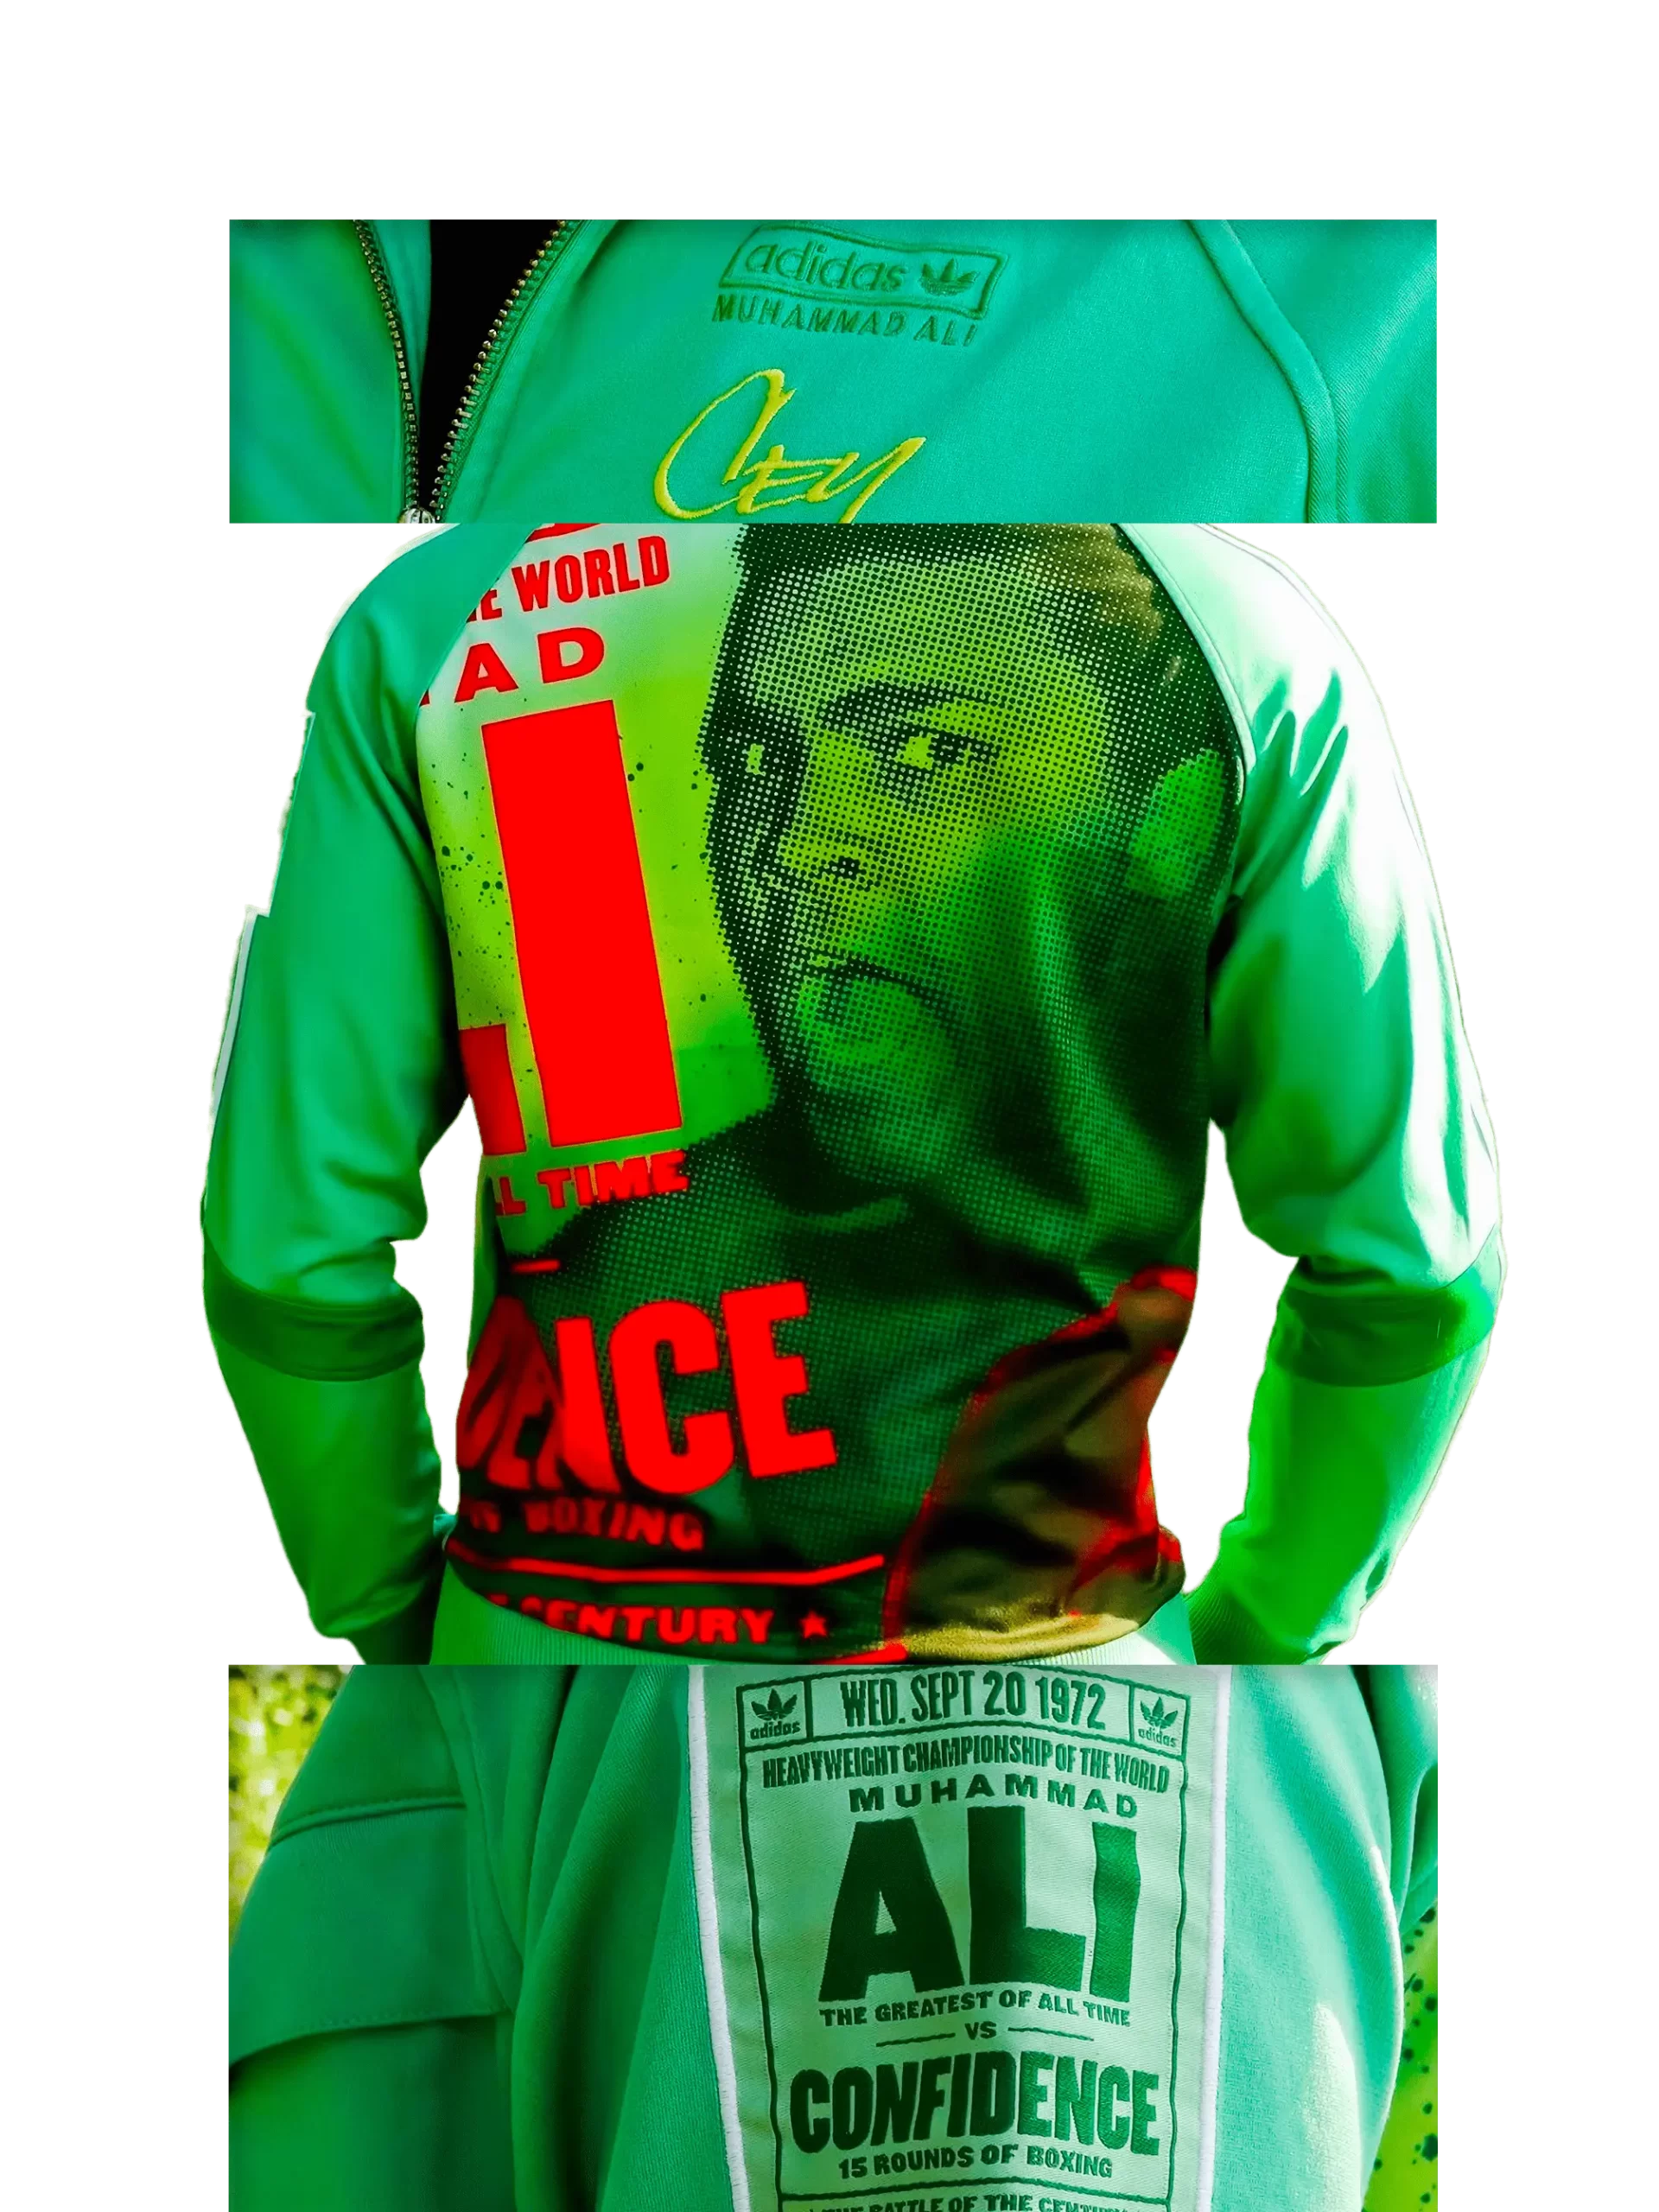 Men's 2007 Muhammad Ali Confidence TT by Adidas: Launching (EnLawded.com file #lmchk77469ip2y124779kg9st)